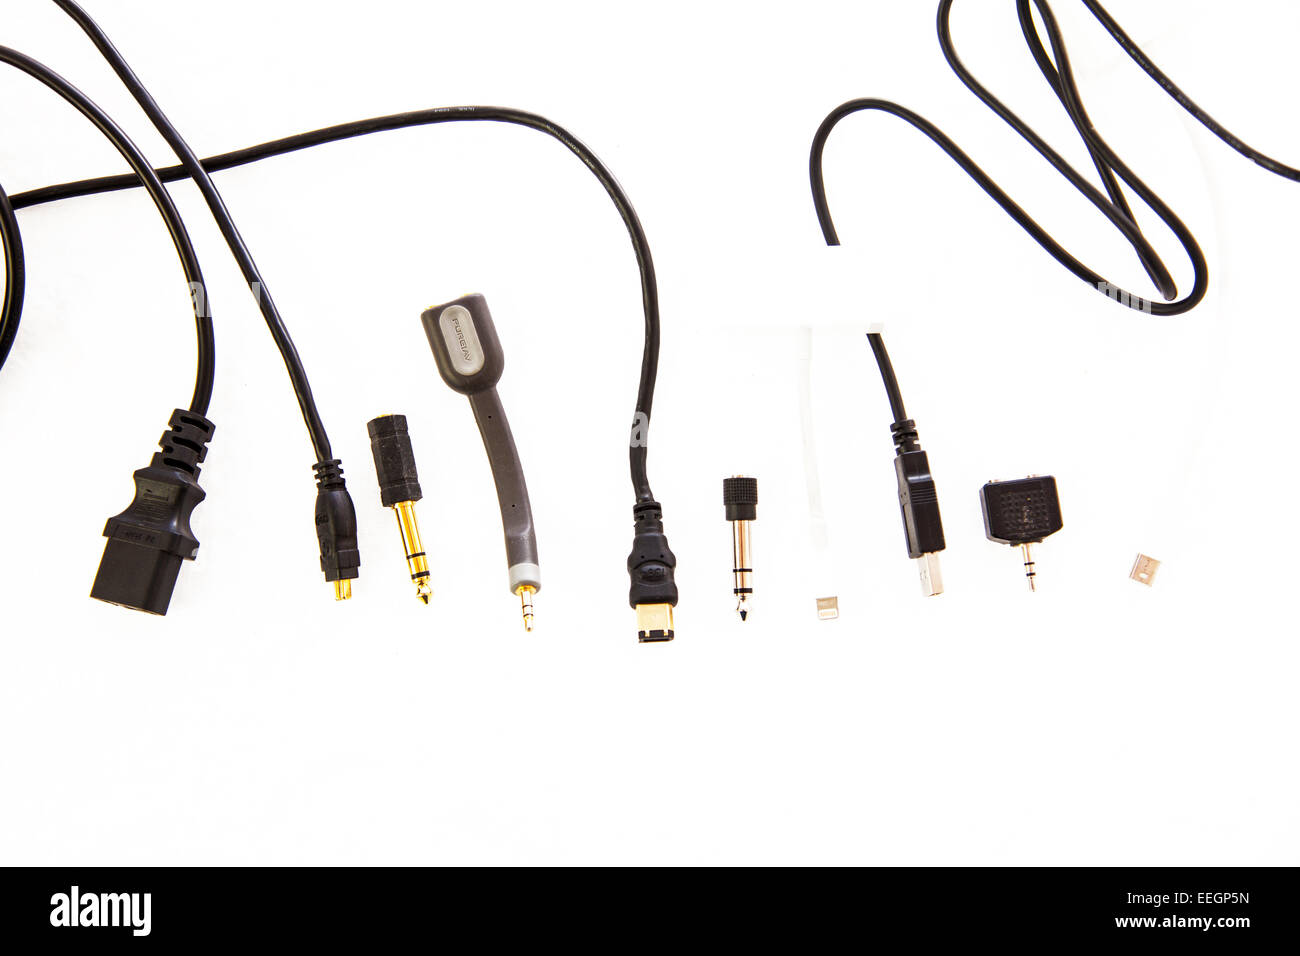 elektrische Anschlüsse Kabel USB-Stecker Stecker Wasserkocher Blei